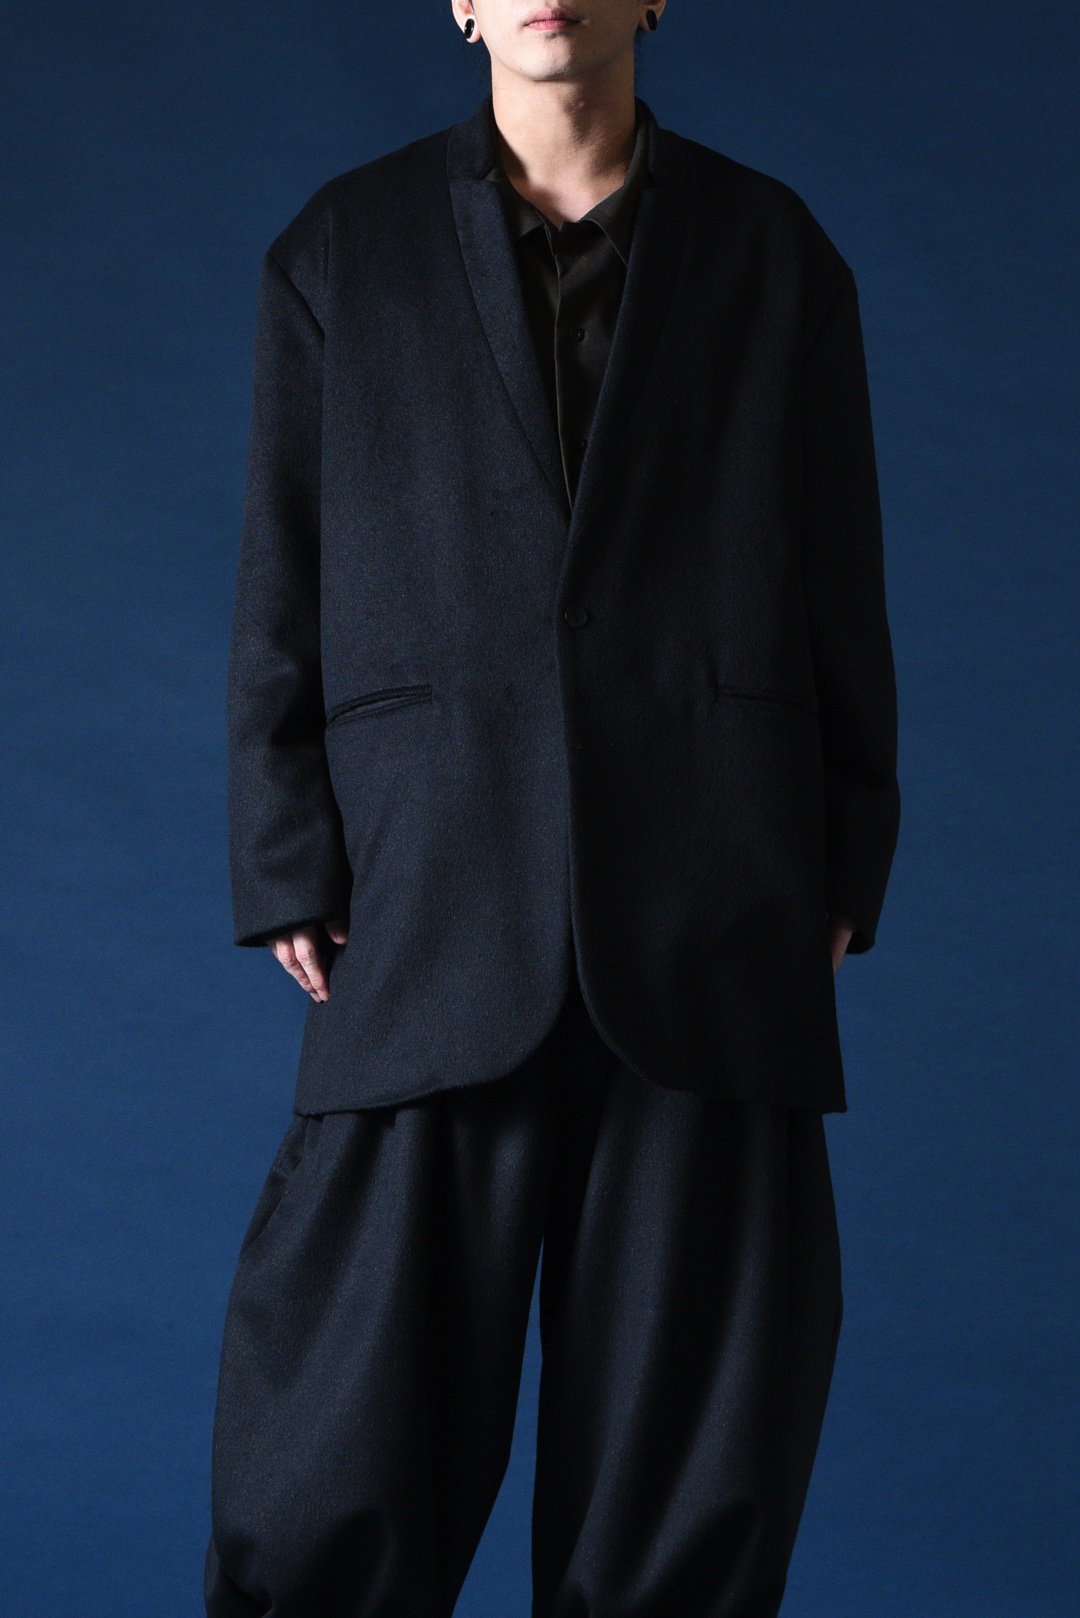 Angora Wool 02 Lapel Long Jacket black - BISHOOL